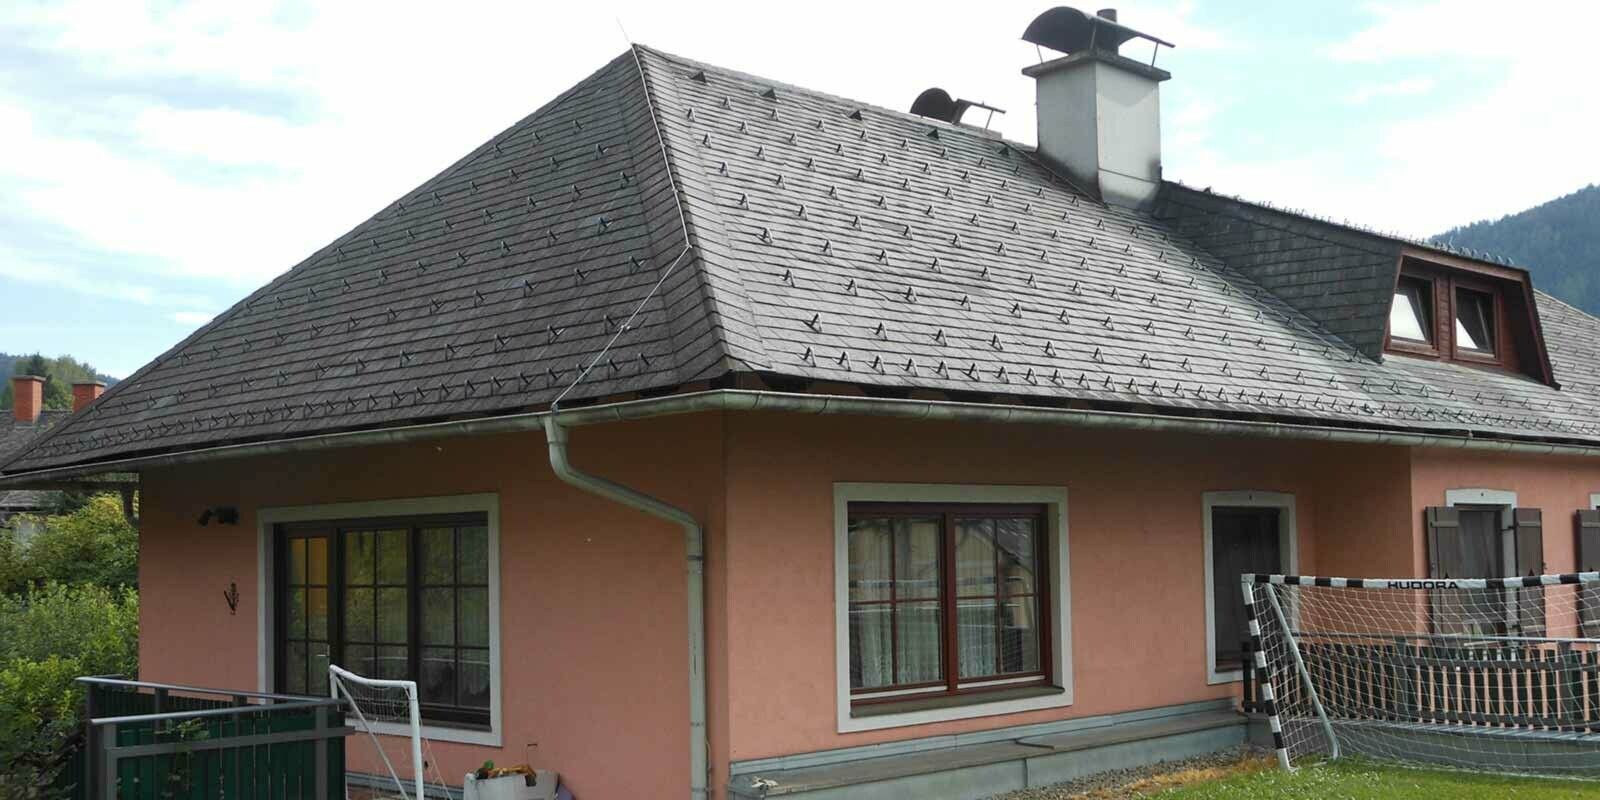 Casa prima della ristrutturazione del tetto a padiglione con abbaino trapezoidale con scandole PREFA